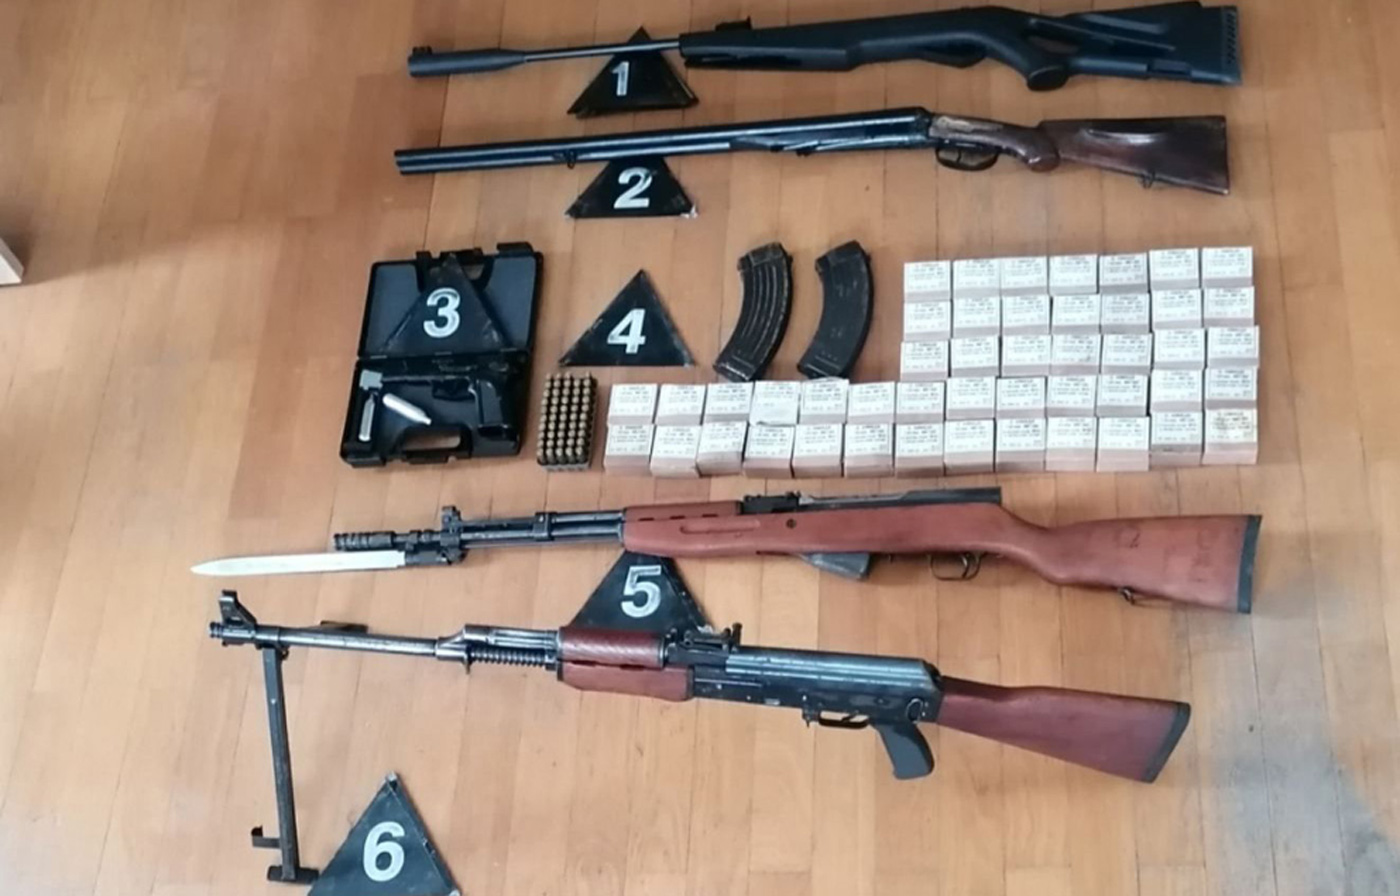 Zaplenjen puškomitralјez, razno oružje i municija u nelegalnom posedu